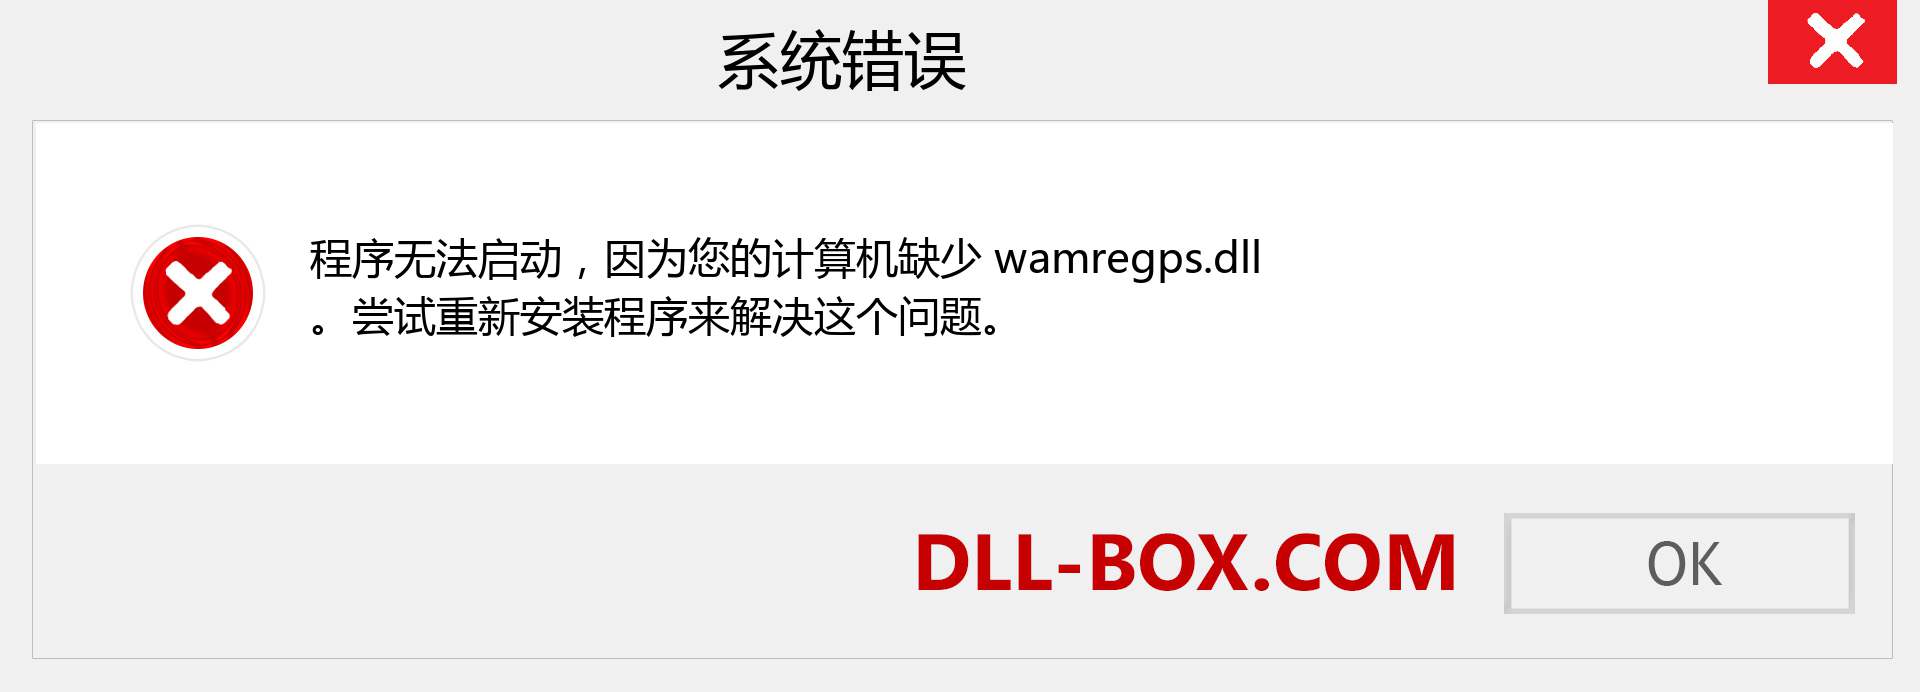 wamregps.dll 文件丢失？。 适用于 Windows 7、8、10 的下载 - 修复 Windows、照片、图像上的 wamregps dll 丢失错误